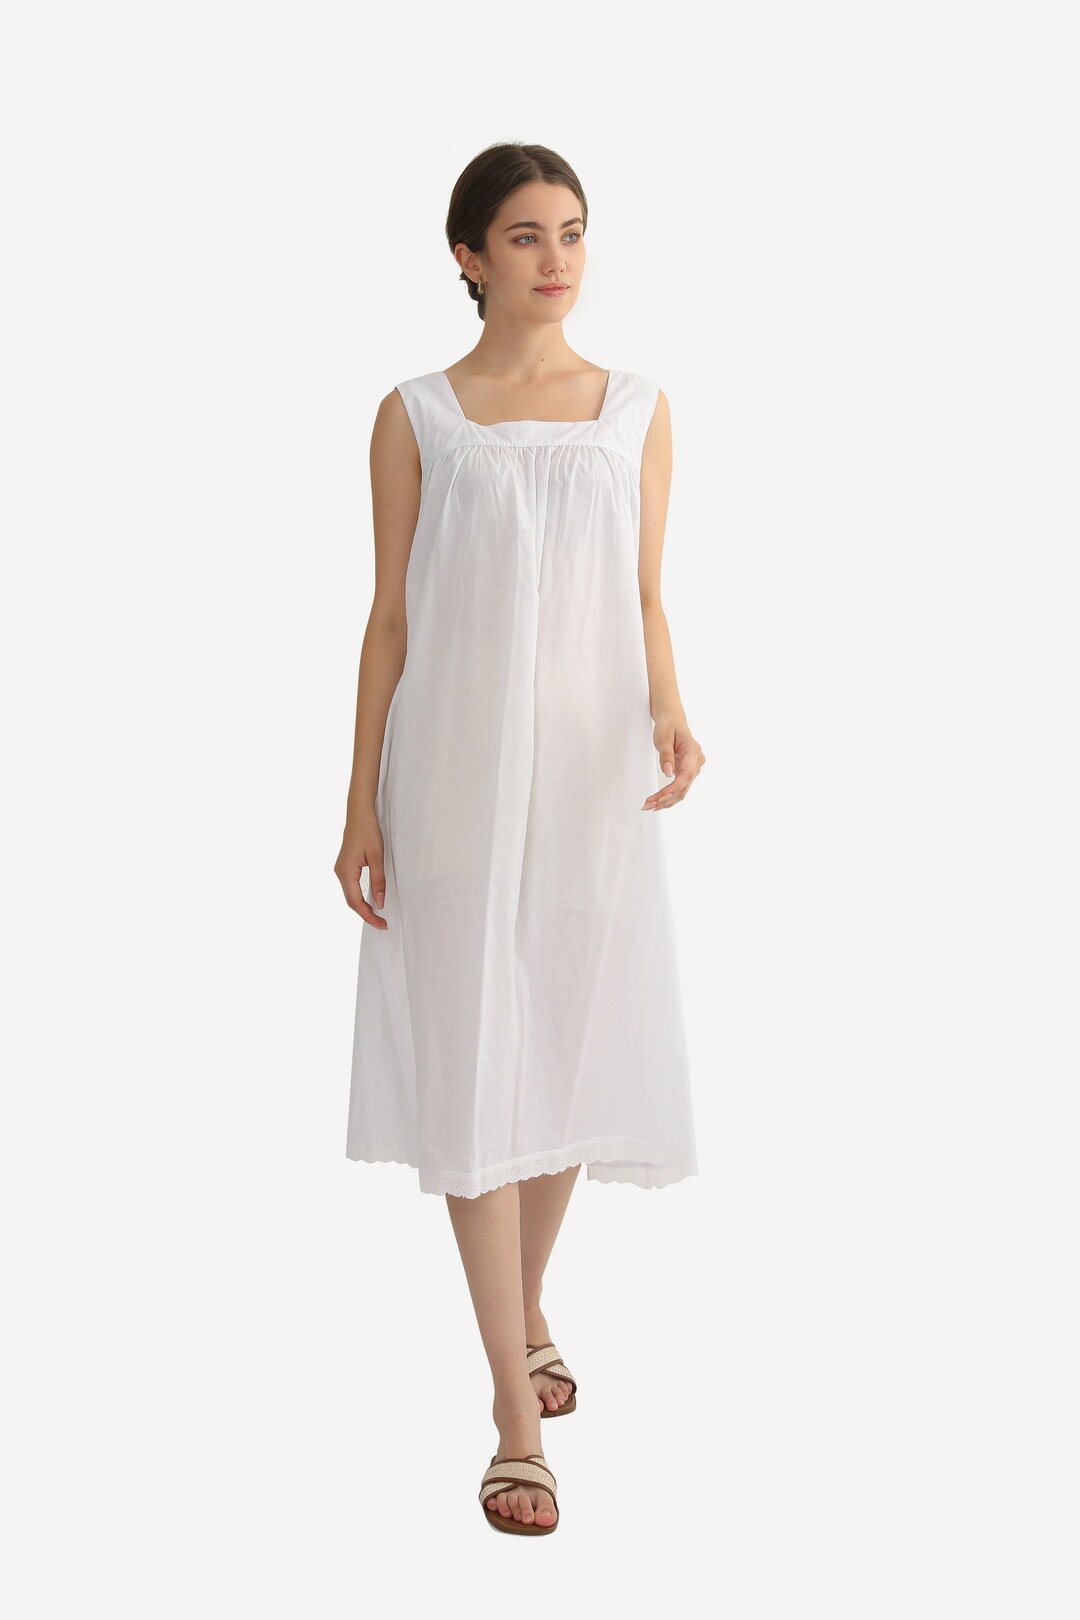 Ночная сорочка женская Mingul & Meiyeon 220792 белая 48 RU